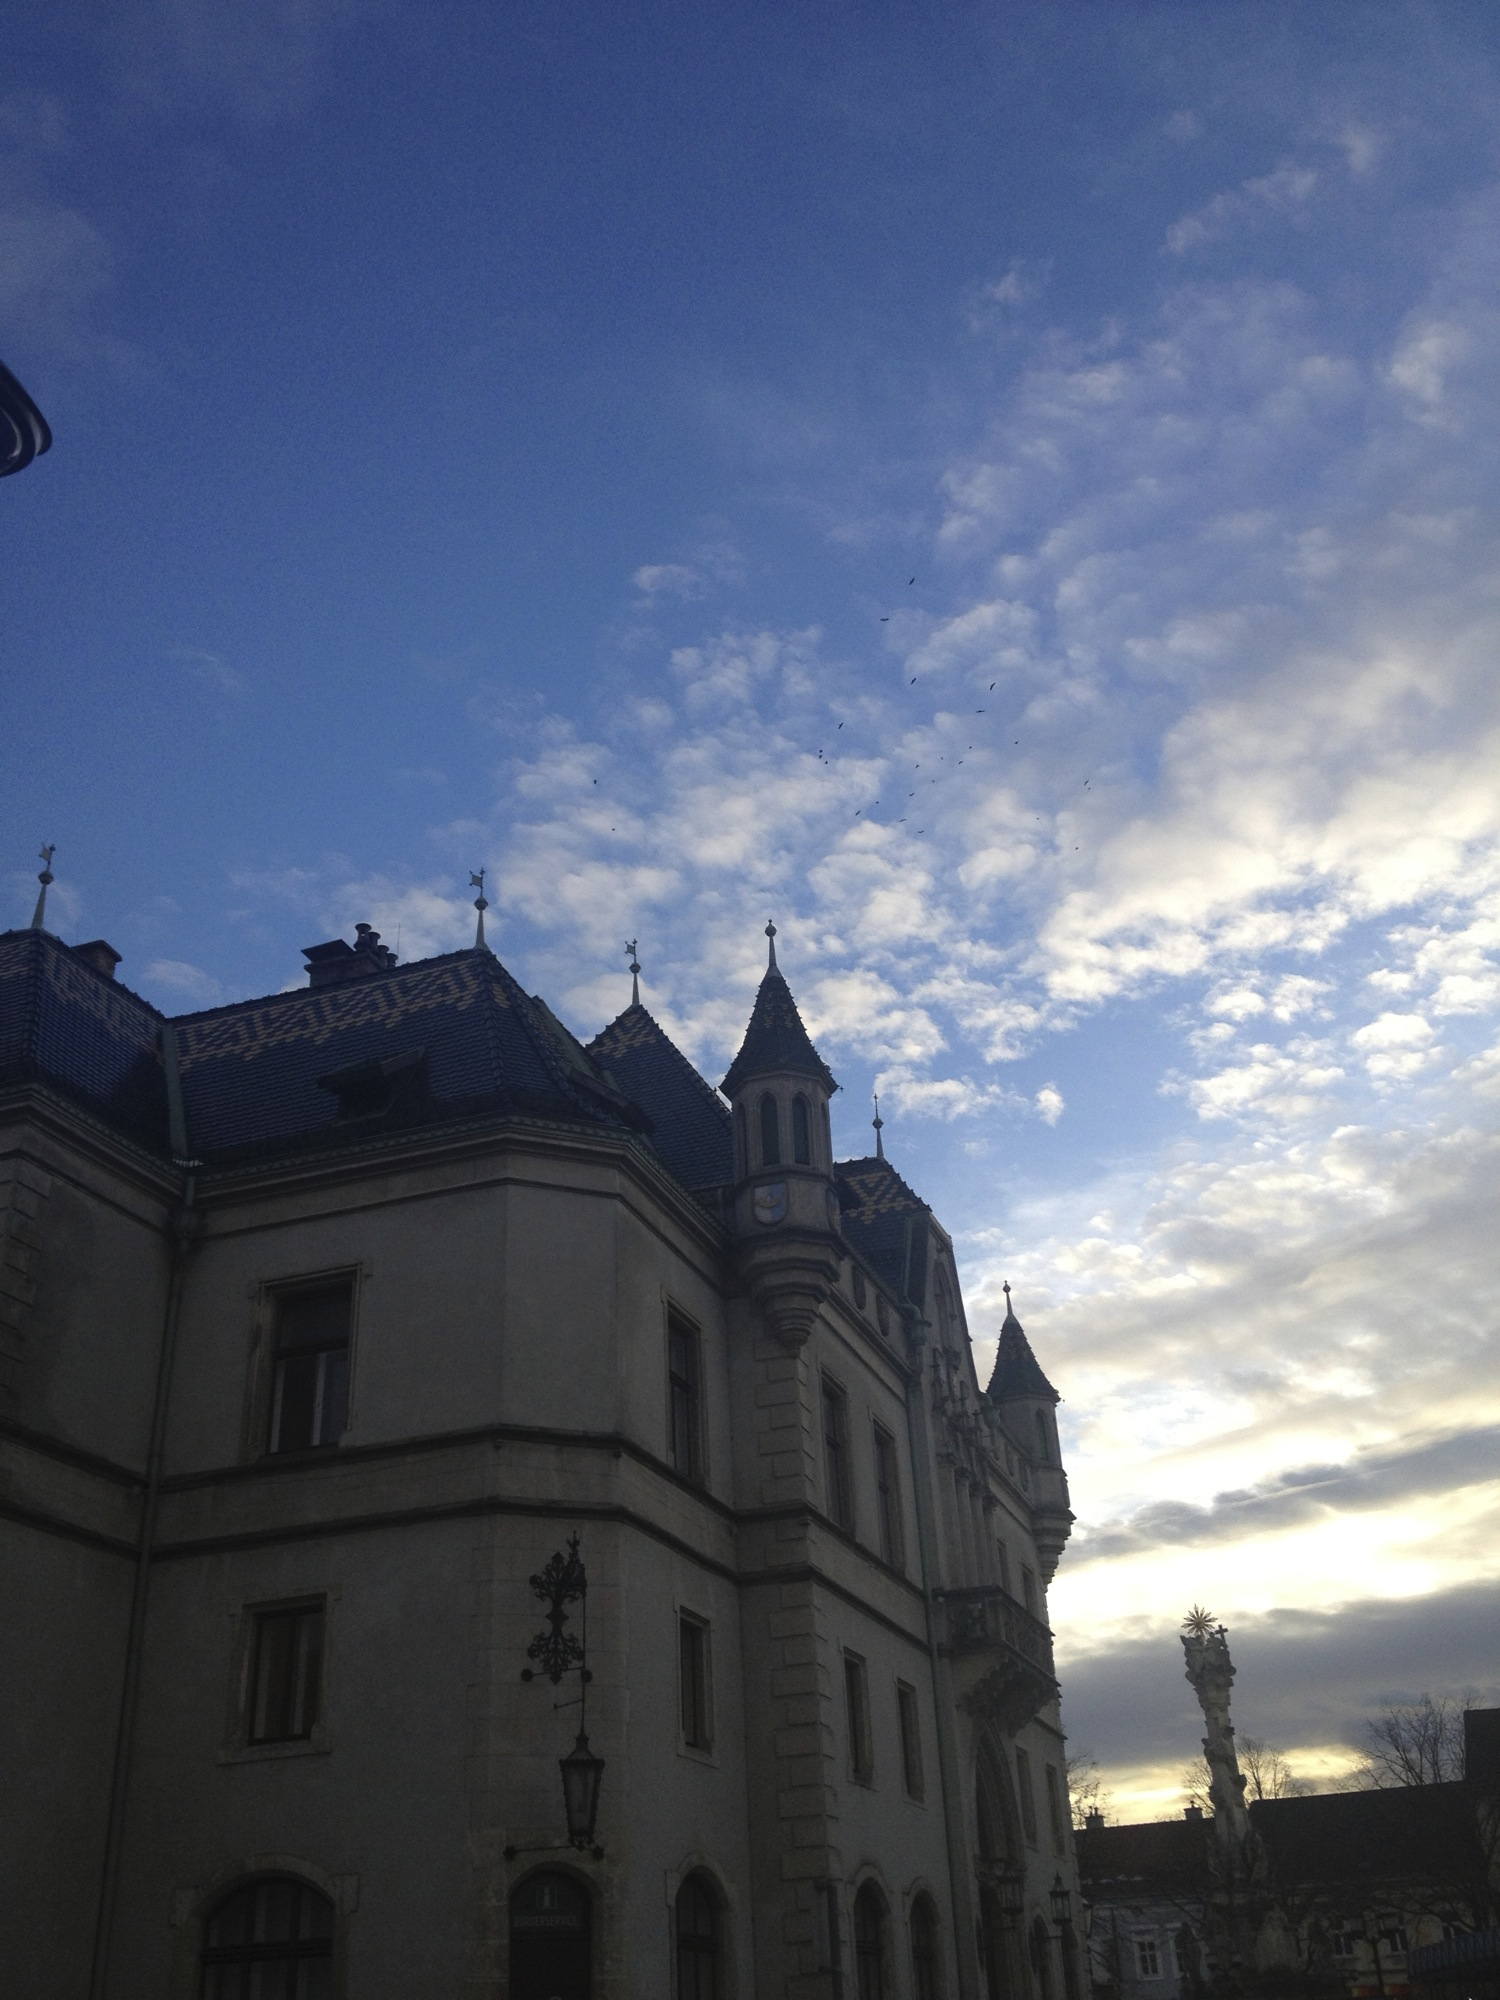 Rathaus Korneuburg mit Wolken und Vogelschwarm